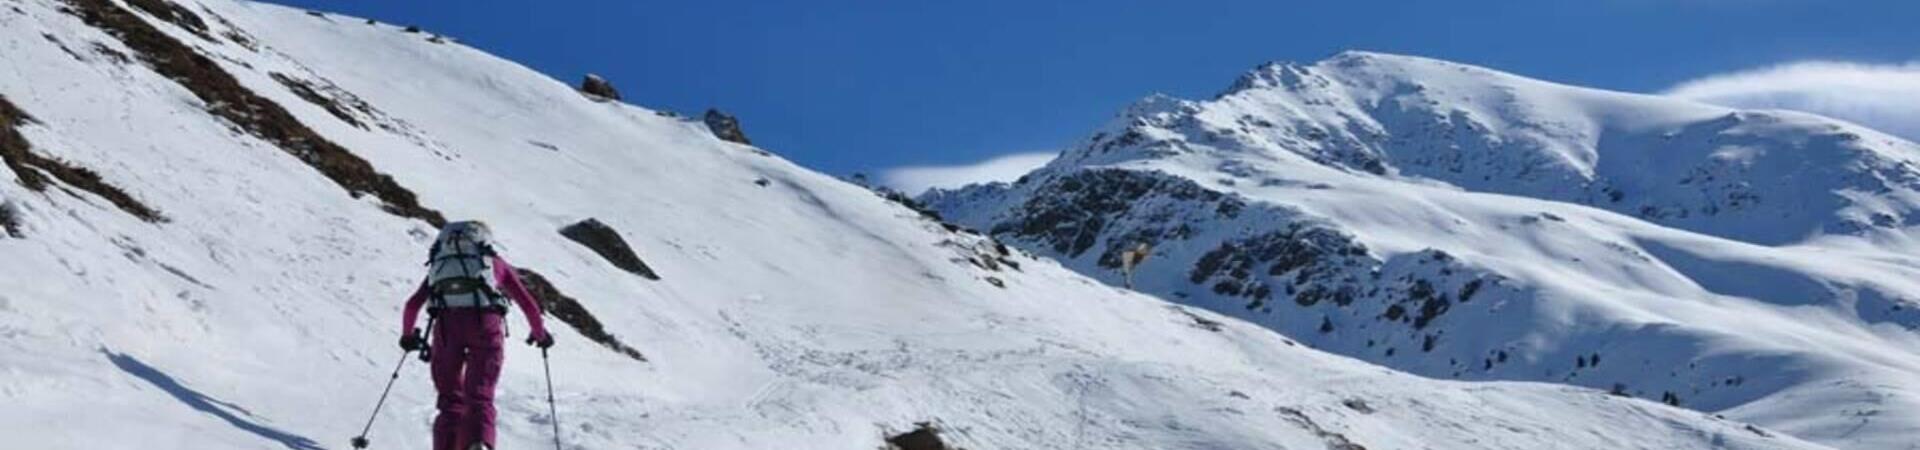 Skitour to GLockhauser - Ski Touring in Venosta Valley - Where to go